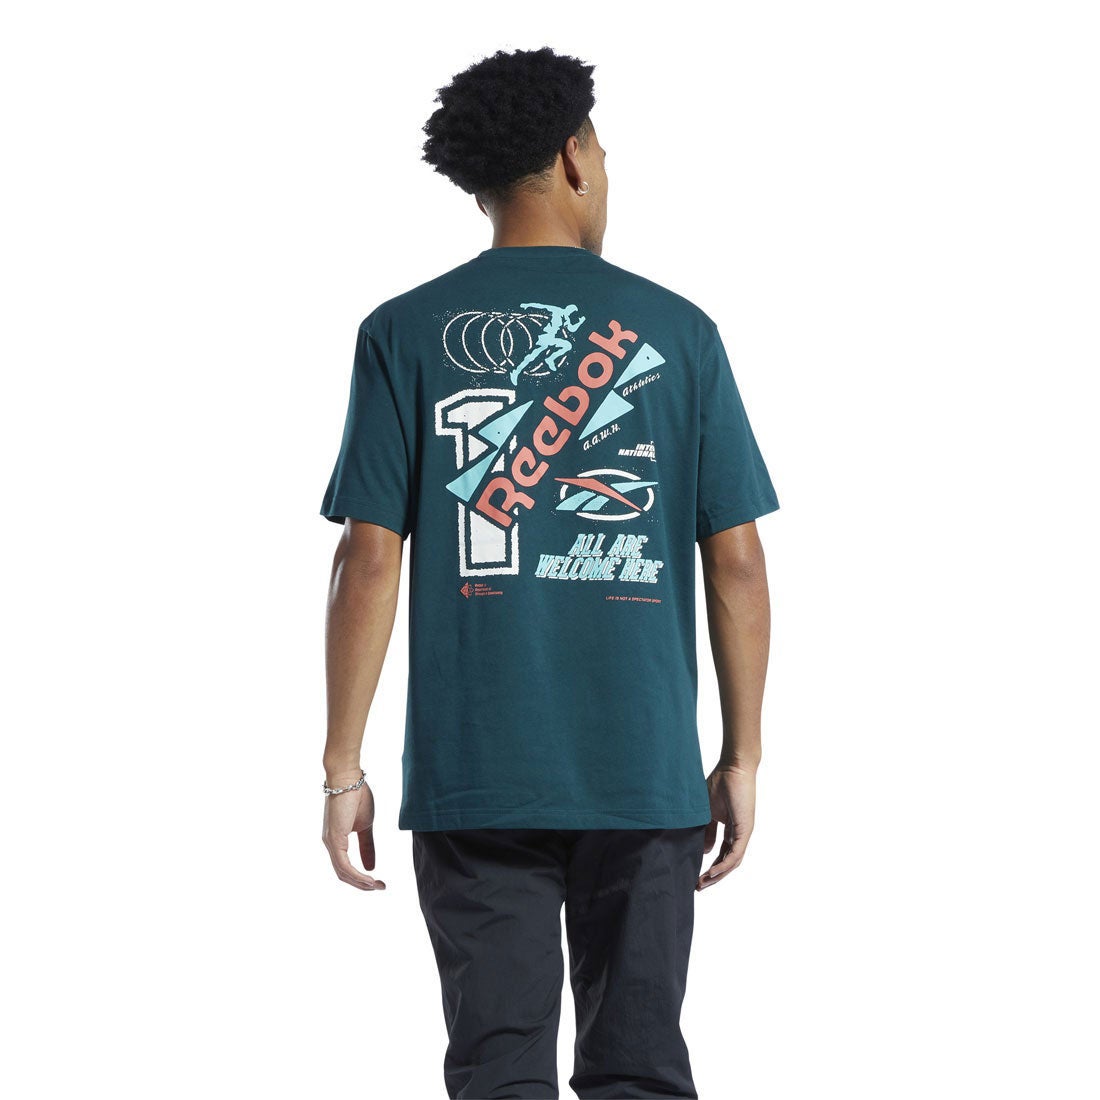 グラフィック シリーズ サーティファイド Tシャツ / Graphic Series Certified T-Shirt （フォレストグリーン）  -Reebok 公式オンラインショップ